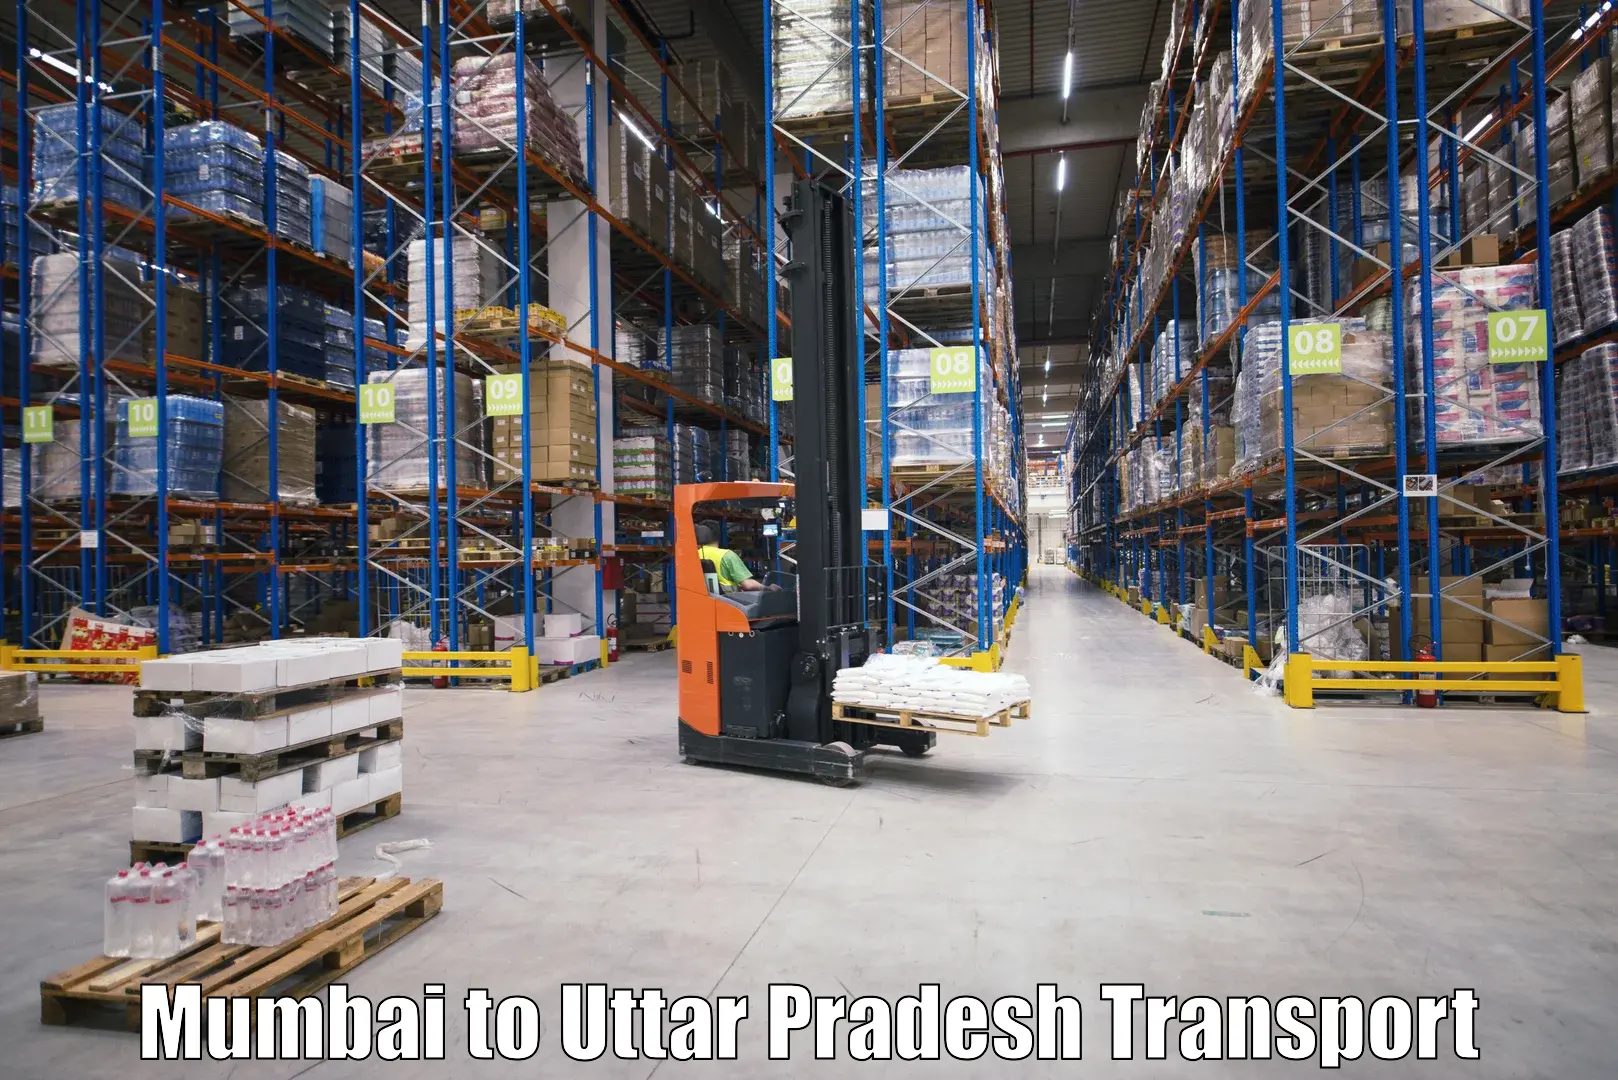 Daily parcel service transport Mumbai to Sahatwar